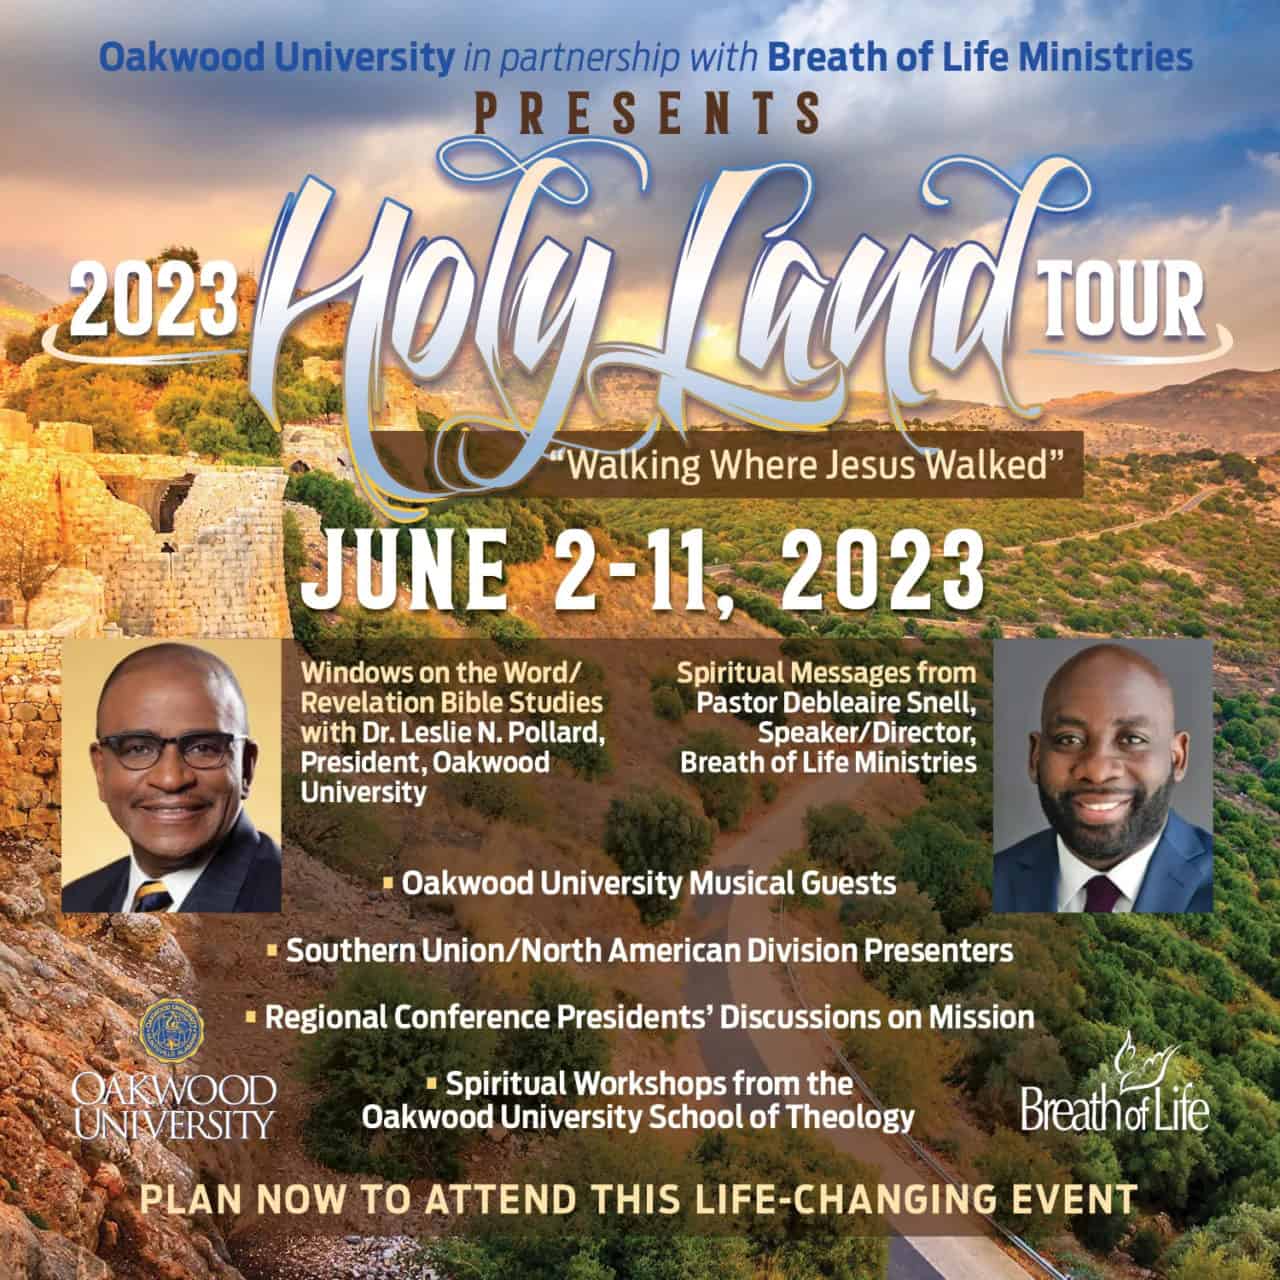 2023 Holy Land Tour Oakwood University